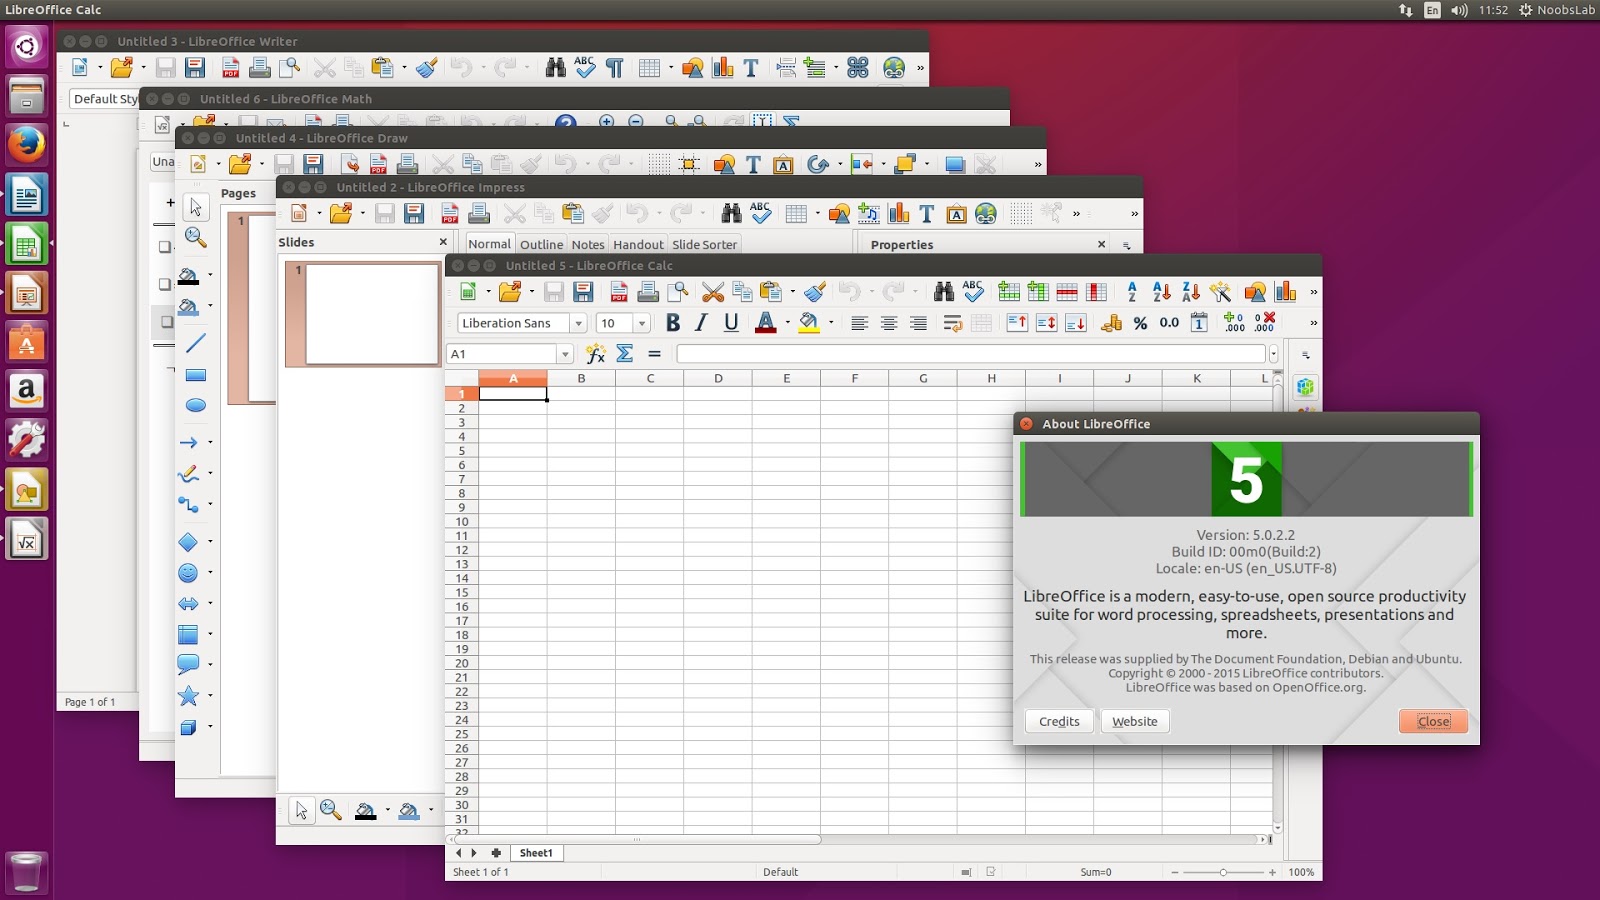 android studio for ubuntu 20.04